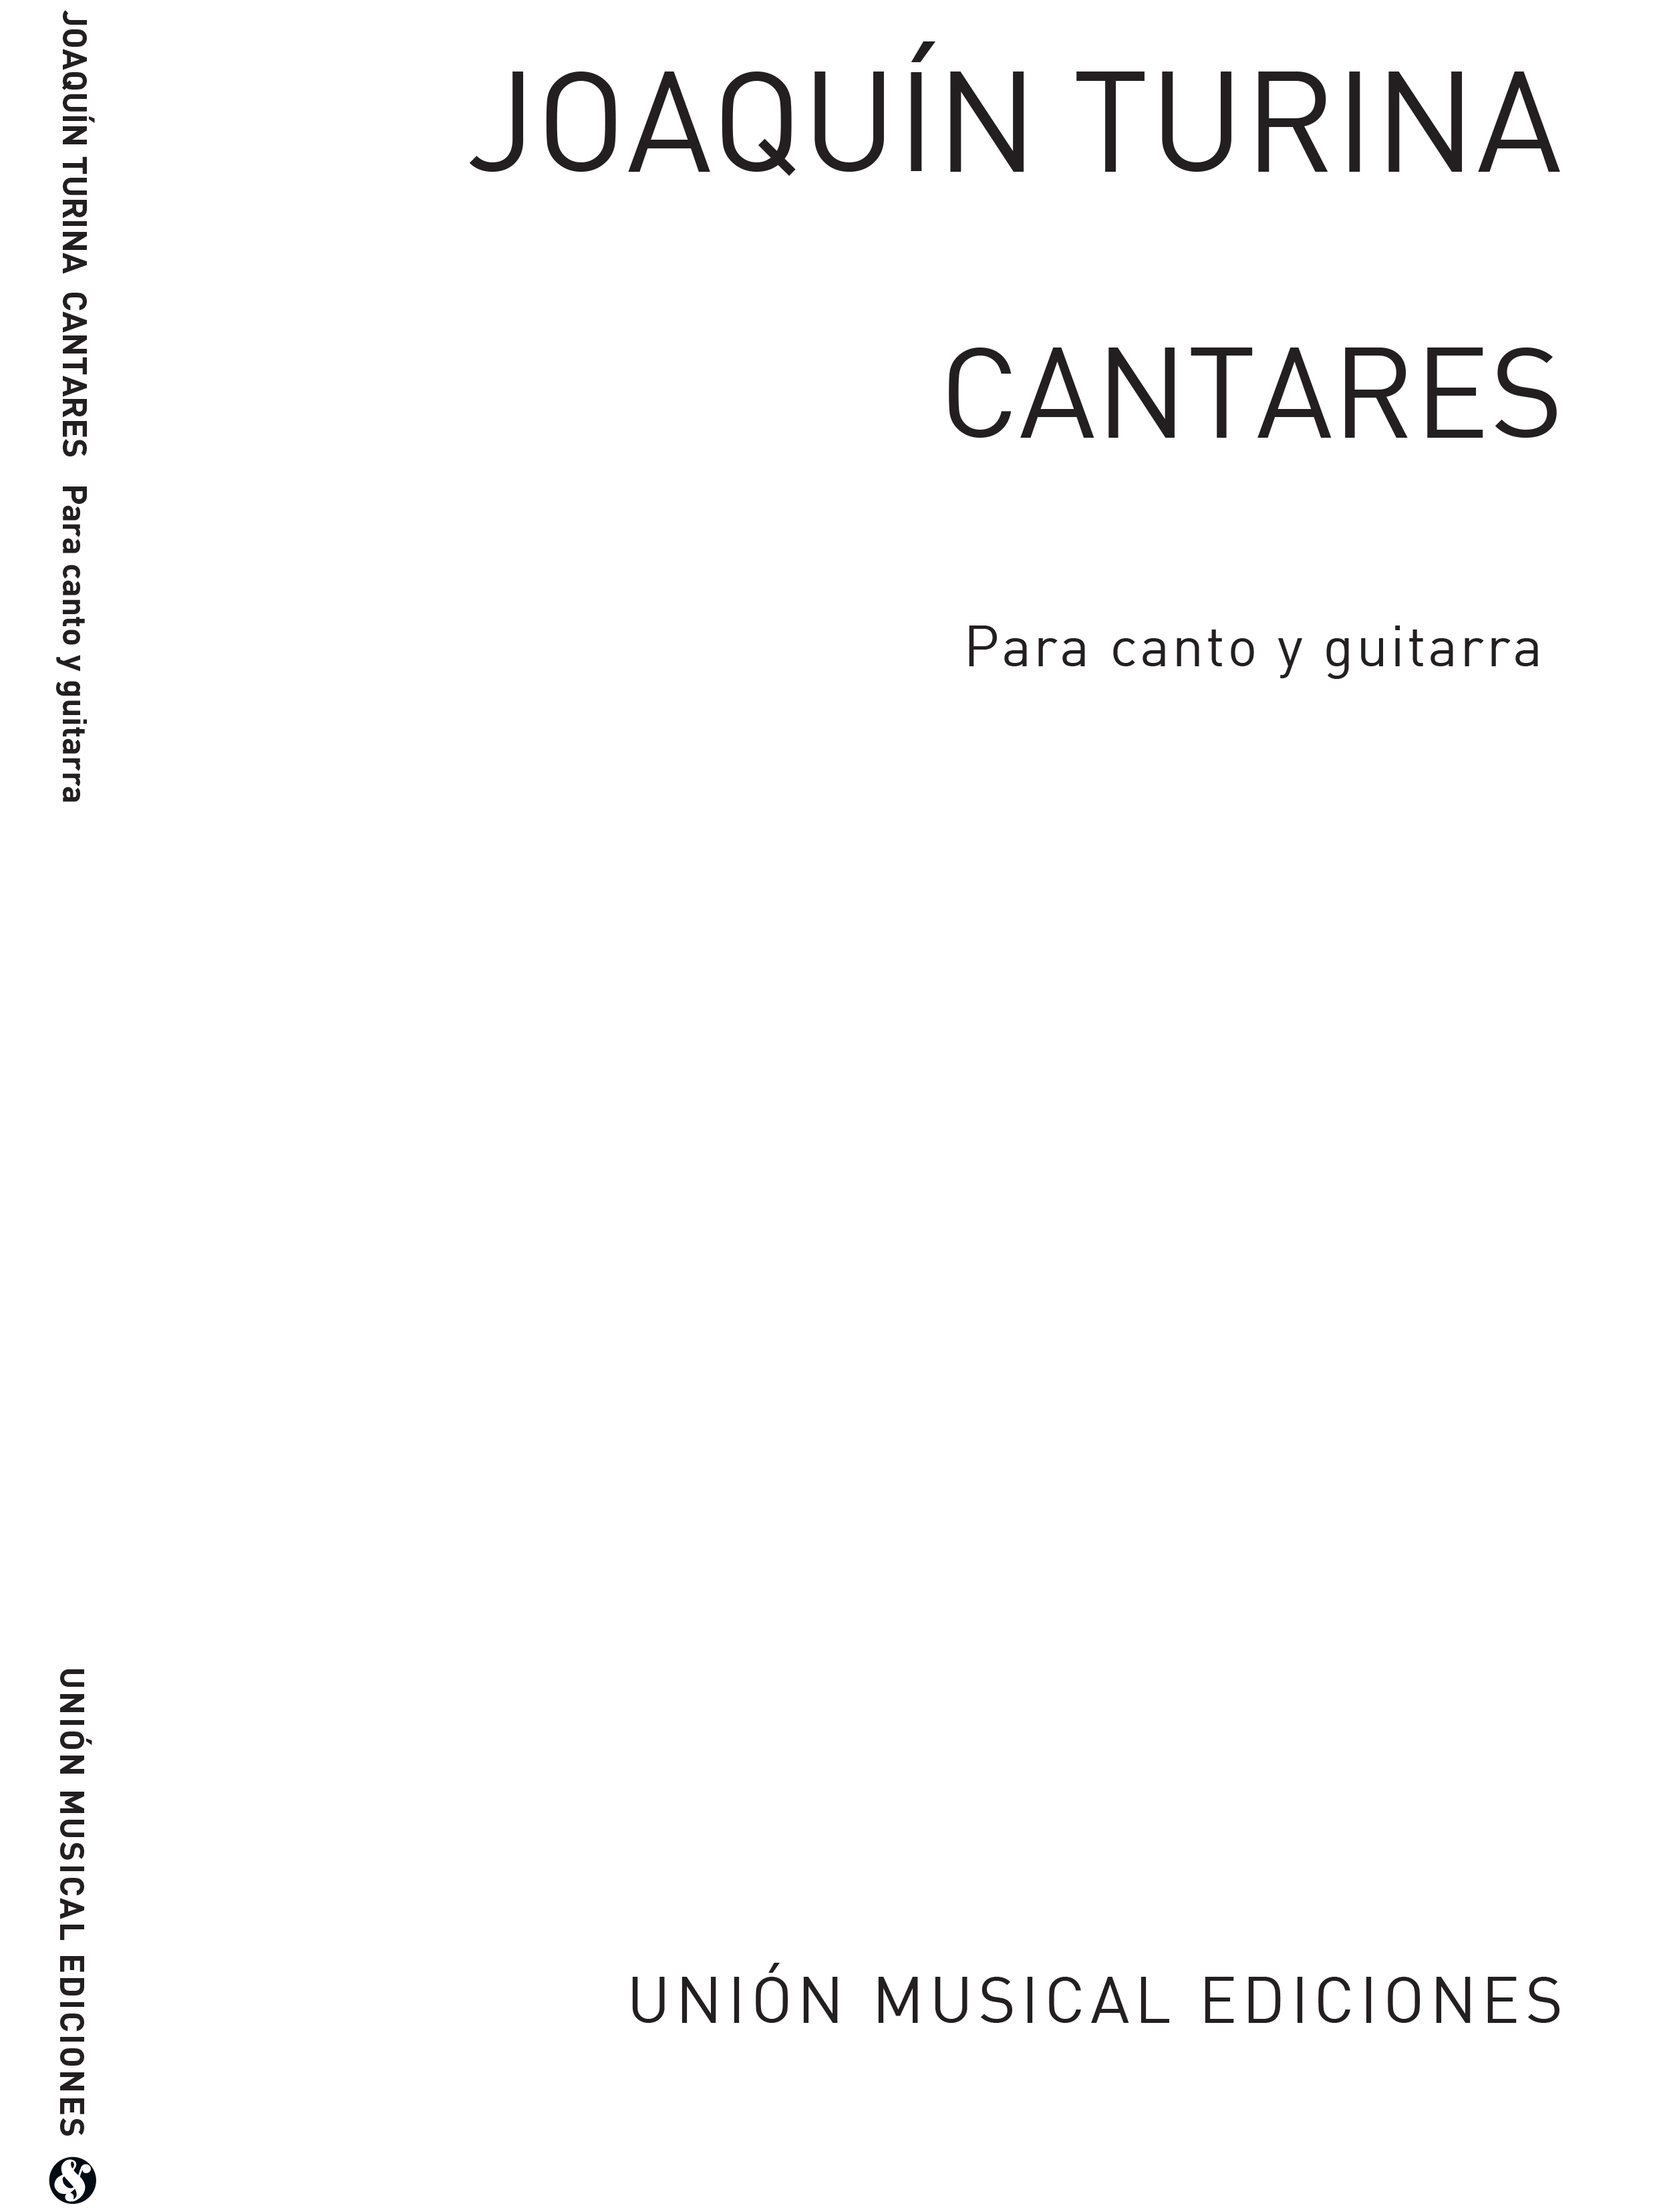 Joaquín Turina: Cantares For Voice And Guitar: Soprano: Vocal Work